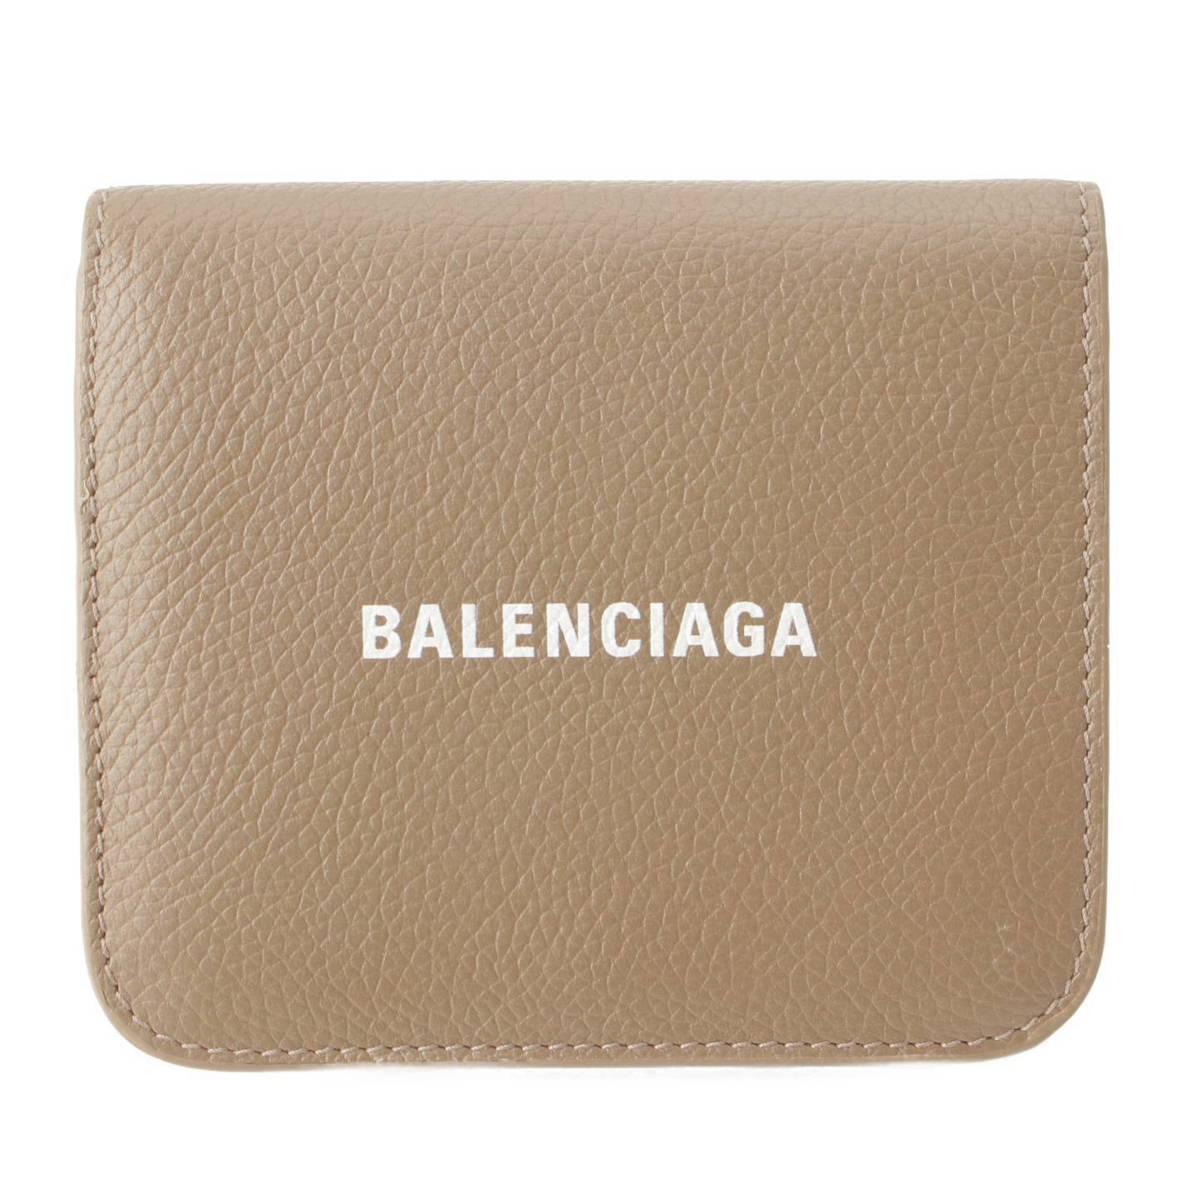 バレンシアガ Balenciaga CASH キャッシュ ロゴ ミニ財布 二つ折り財布